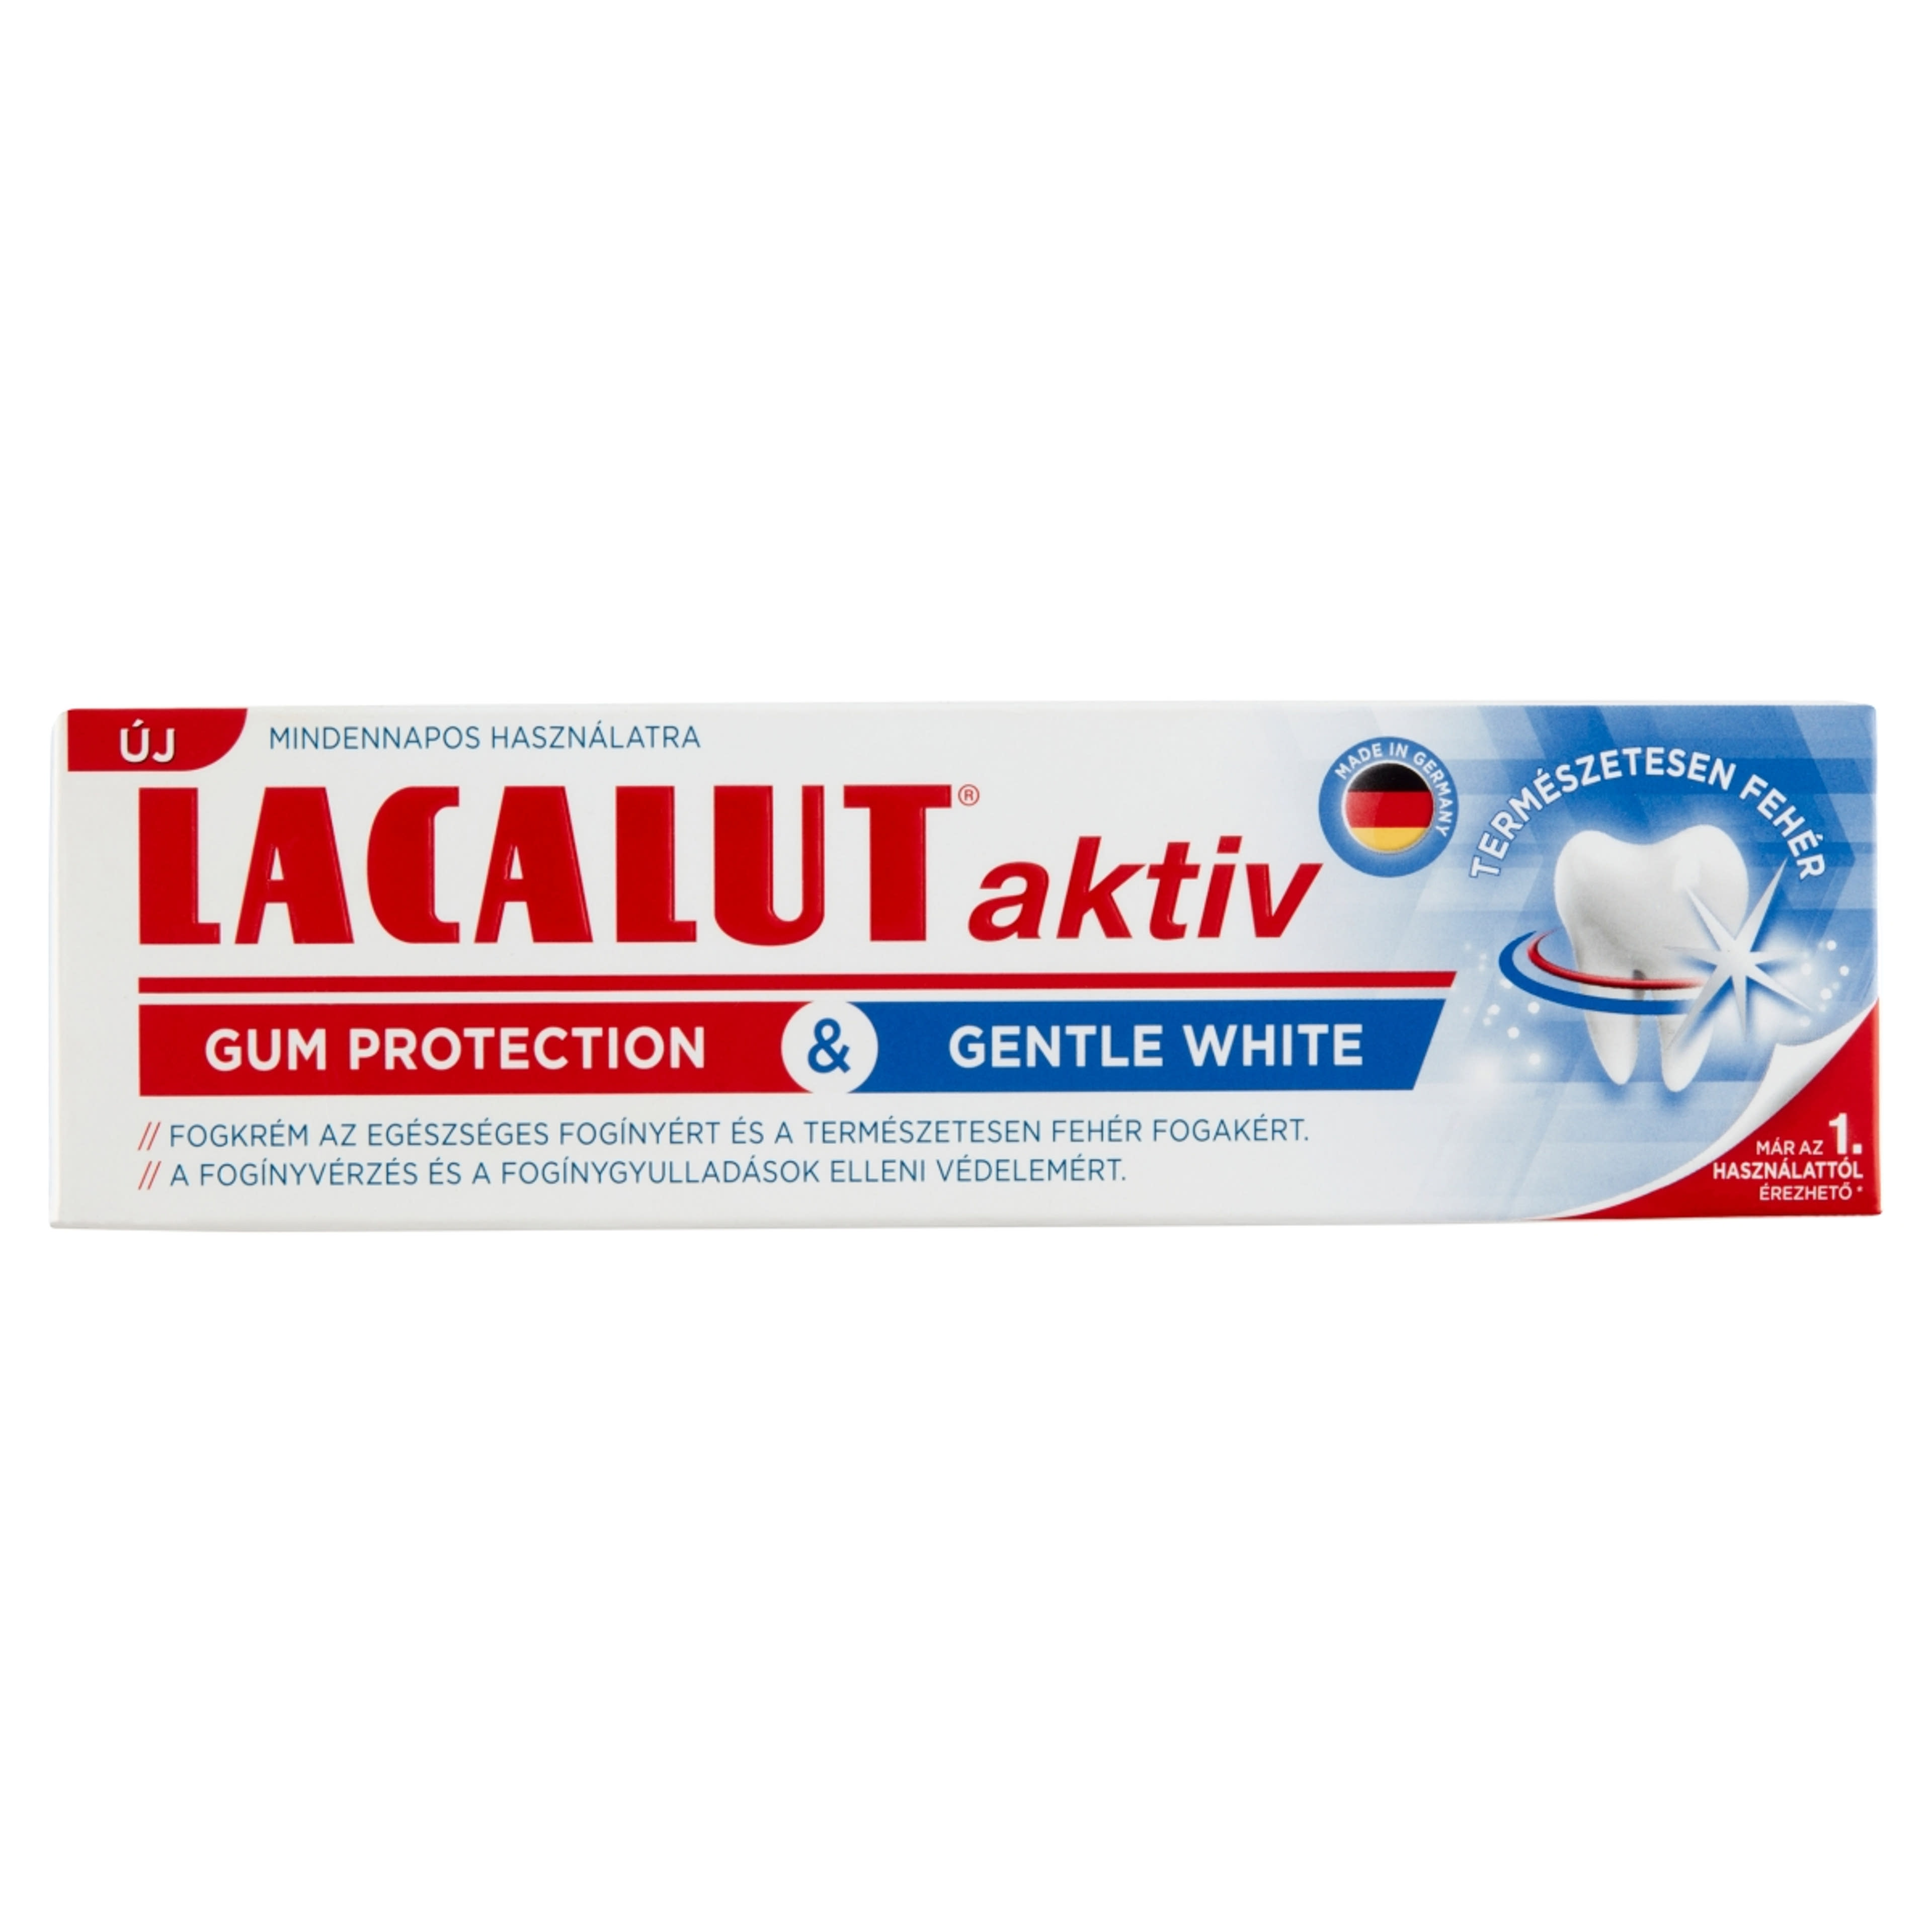 Lacalut Aktiv Gum Protection & Gentle White fogkrém - 75 ml